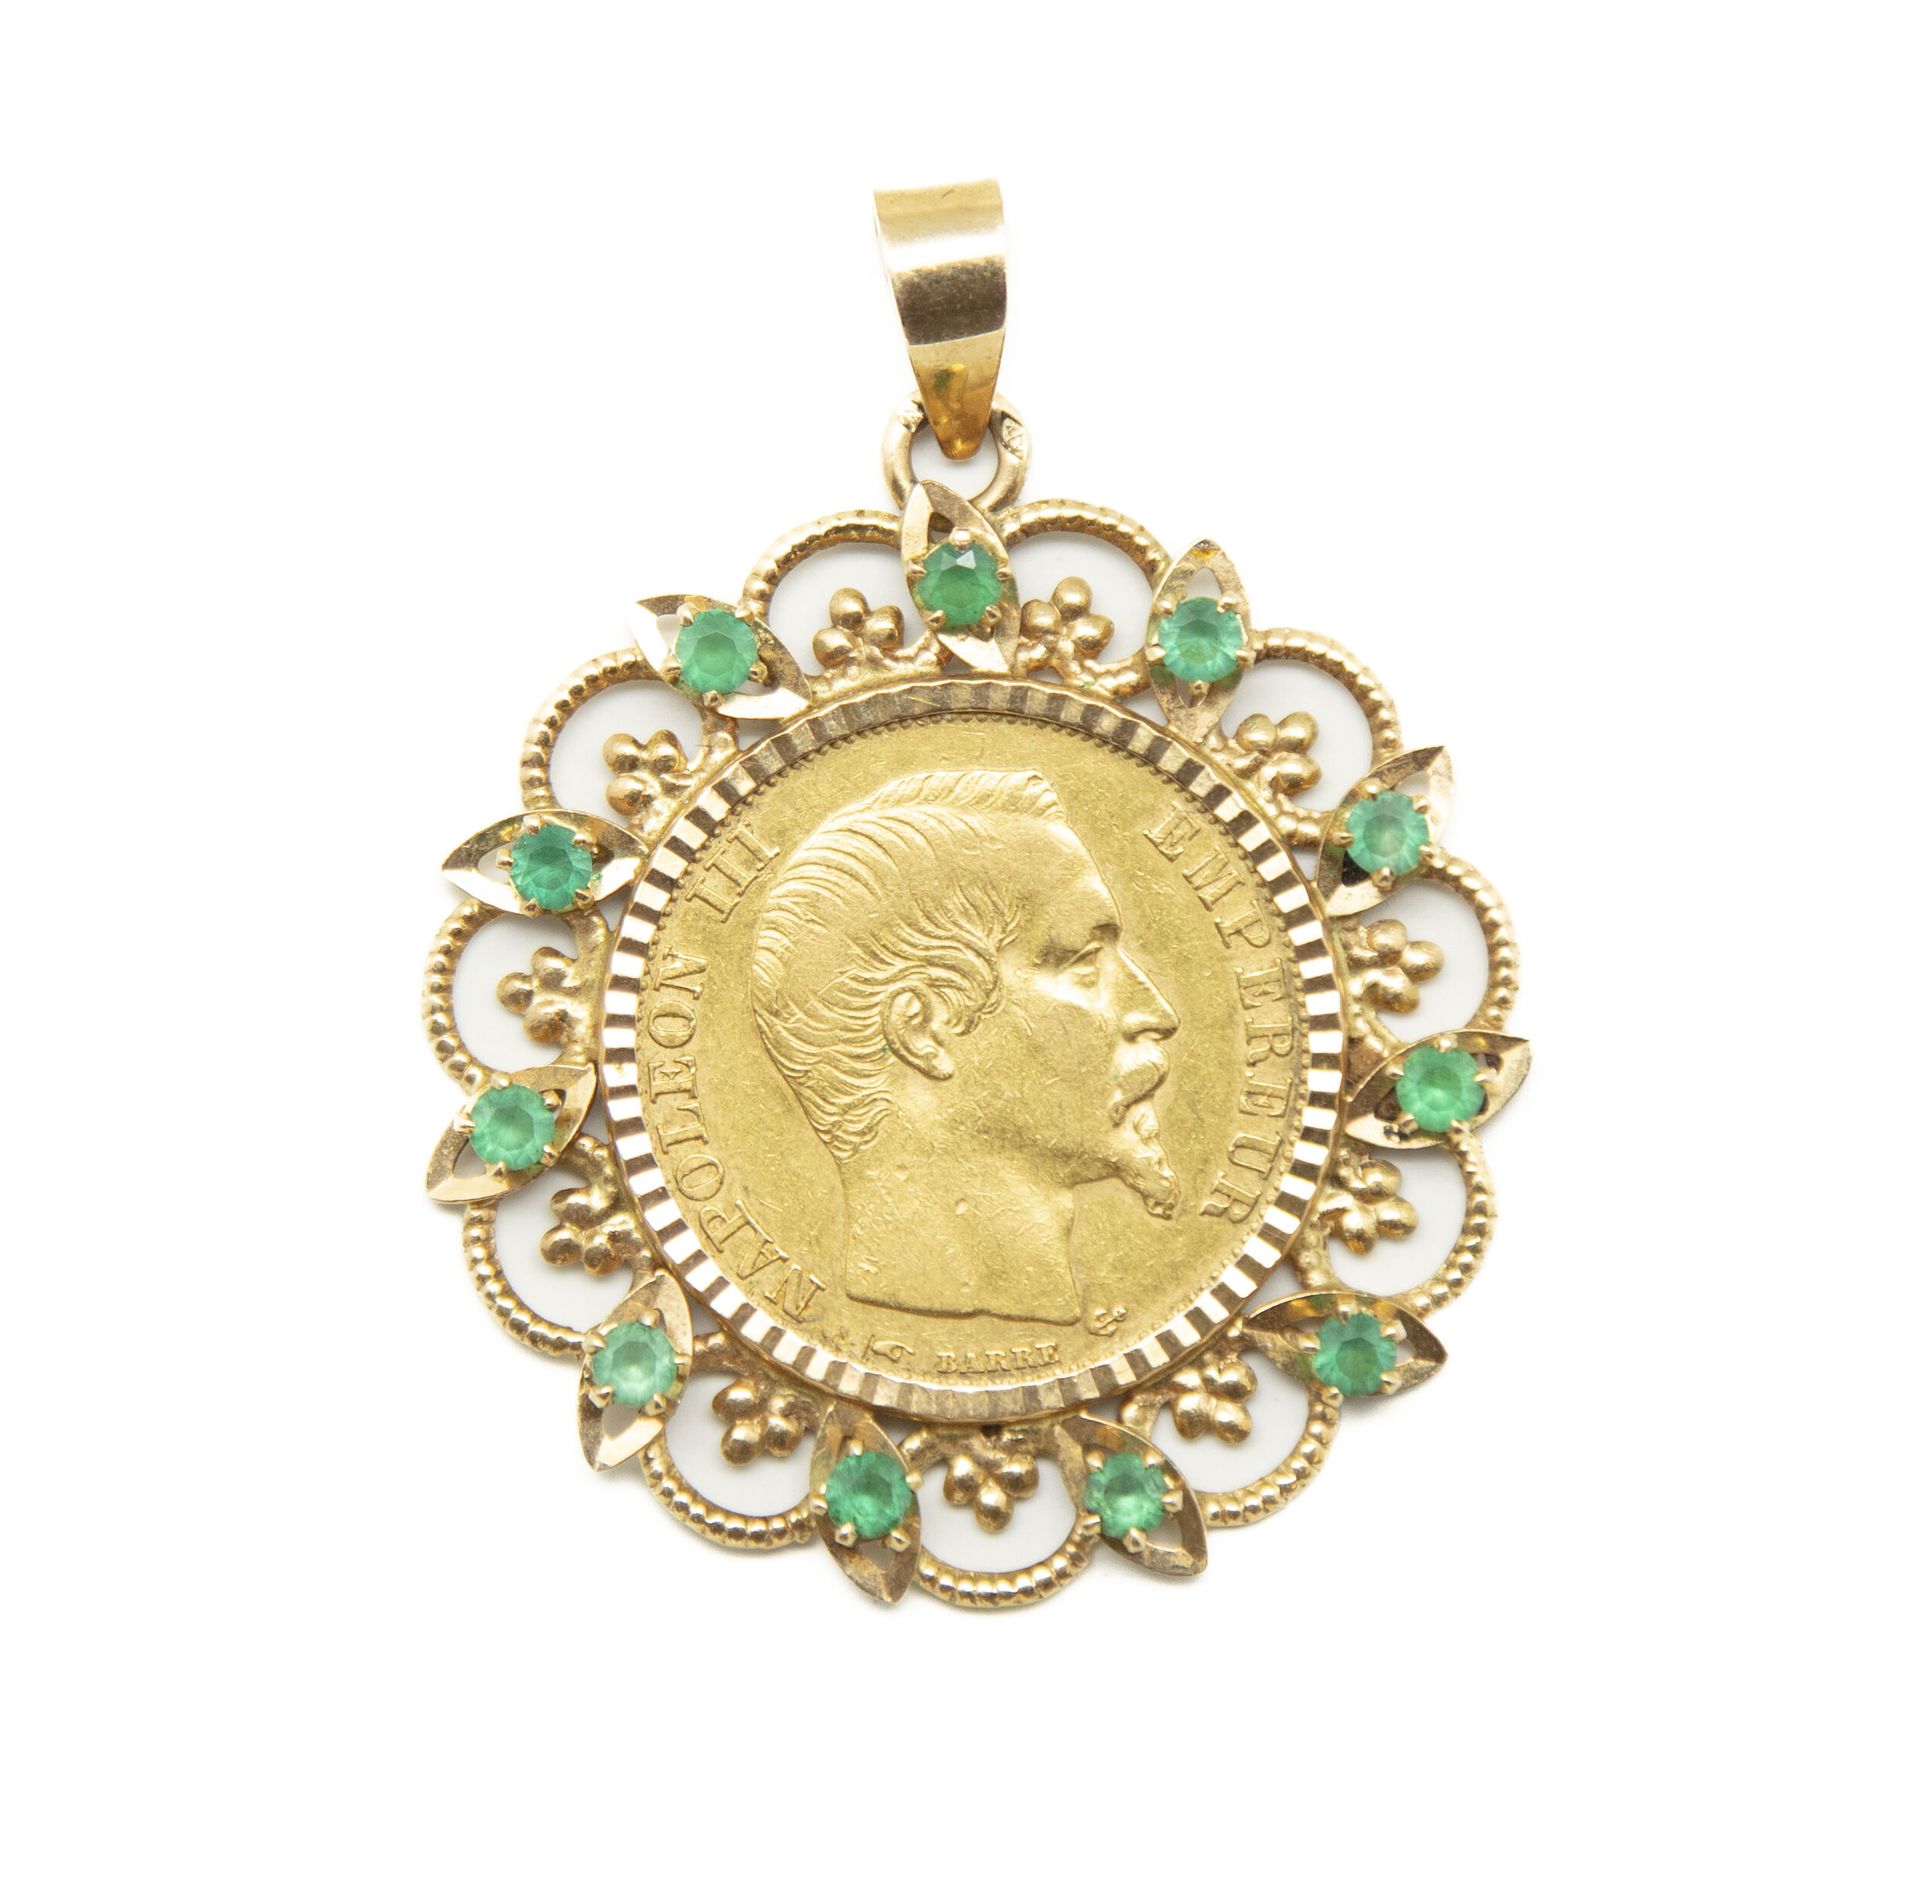 Null 黄金吊坠，中间有一枚20法郎的拿破仑三世金币，框架上镶嵌着小祖母绿
总重量：10.5克。